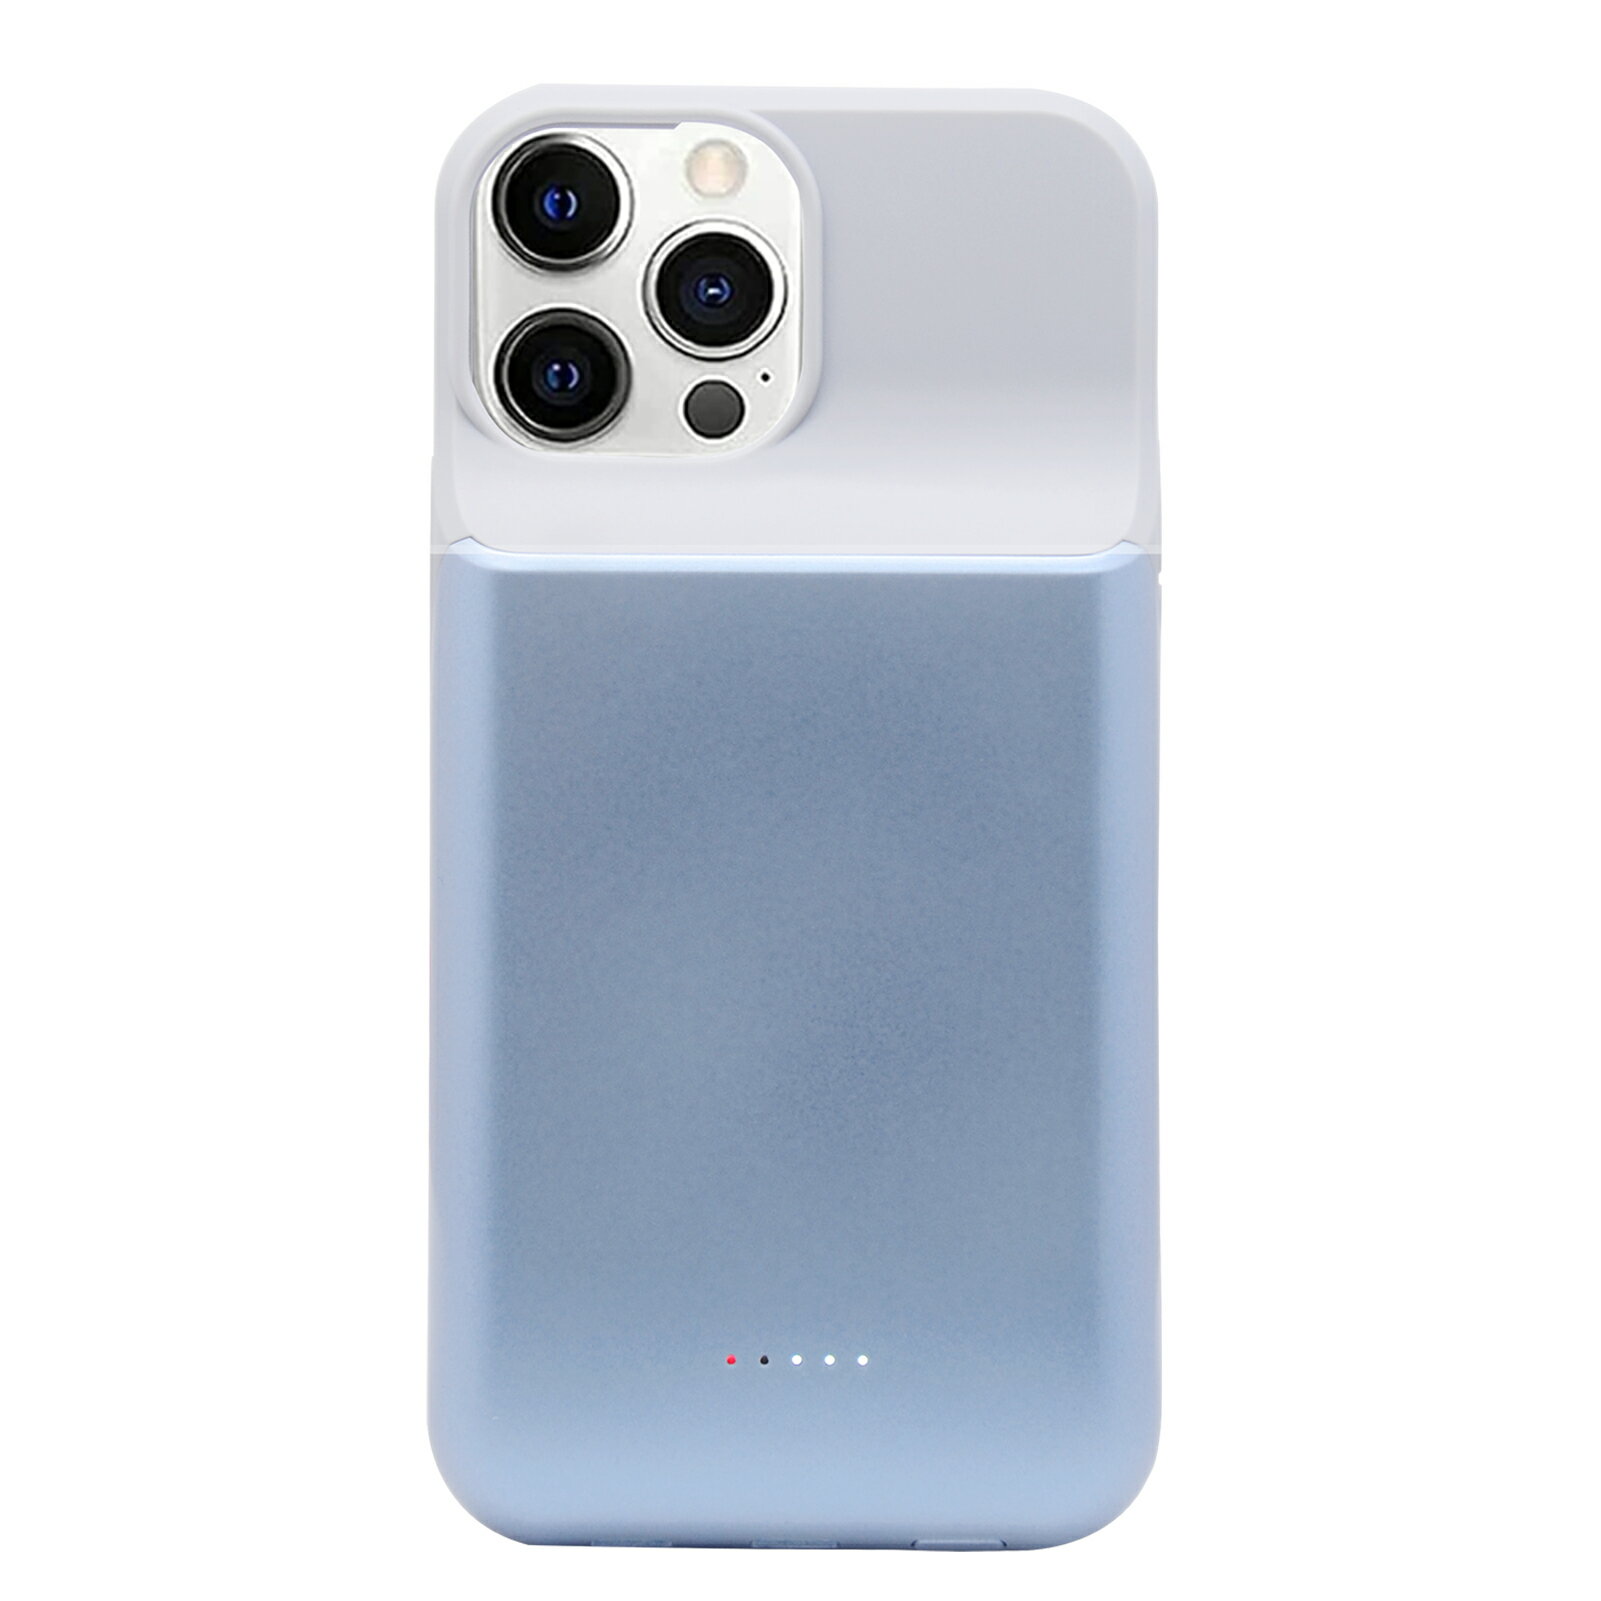 ●互換性のあるモデル：iPhone 13 Pro 藍 ●電圧容量：3.8V 6000mAh●【薄くて軽い】 毎日の持ち運びが簡単で、軽くてかさばらず、いつでもどこでもすばやくスマートフォンを充電できます。●【充電使用簡単】ボタンに長押2〜3秒、充電始め/閉じる。充電器繋がって、充電する際に、優先バッテリーケースに充電、またスマホに充電。バッテリーケースの電量100％になったら、自動的にスマホ充電始まり●【多重保護機能】バッテリー自体は、過充電保護、過放電保護、過剰電圧防止、過電流保護、パワー過剰防止などの防護機能を搭載しております。過充電/発熱時などの場合は、自動充電停止になり、長期間安心してお使いいただけます。●【品質保証】 在庫品全ての全数検査を行っていますので、ご安心 安全にご利用できます。お客様に安心してご購入頂けるよう、万が一、商品に不具合がございましたら、いつでもお気軽にメールにてご連絡ください。【注意点】 ●当店でご購入された商品は、日本国内からお客様のもとへ直送されます。 ●一部商品は国内の提携先倉庫から配送されます。 ●個人輸入される商品は、全てご注文者自身の「個人使用 個人消費」が前提となりますので、ご注文された商品を第三者へ譲渡 転売することは法律で禁止されております。 ●国内配送の商品は国内でのお買い物と同じく消費税が発生いたします。 ●日付指定がなければ最短で出荷します。 ●ご購入前に、何かご不明点やご希望などございましたら、どうぞお気軽にお問合せ下さいませ。